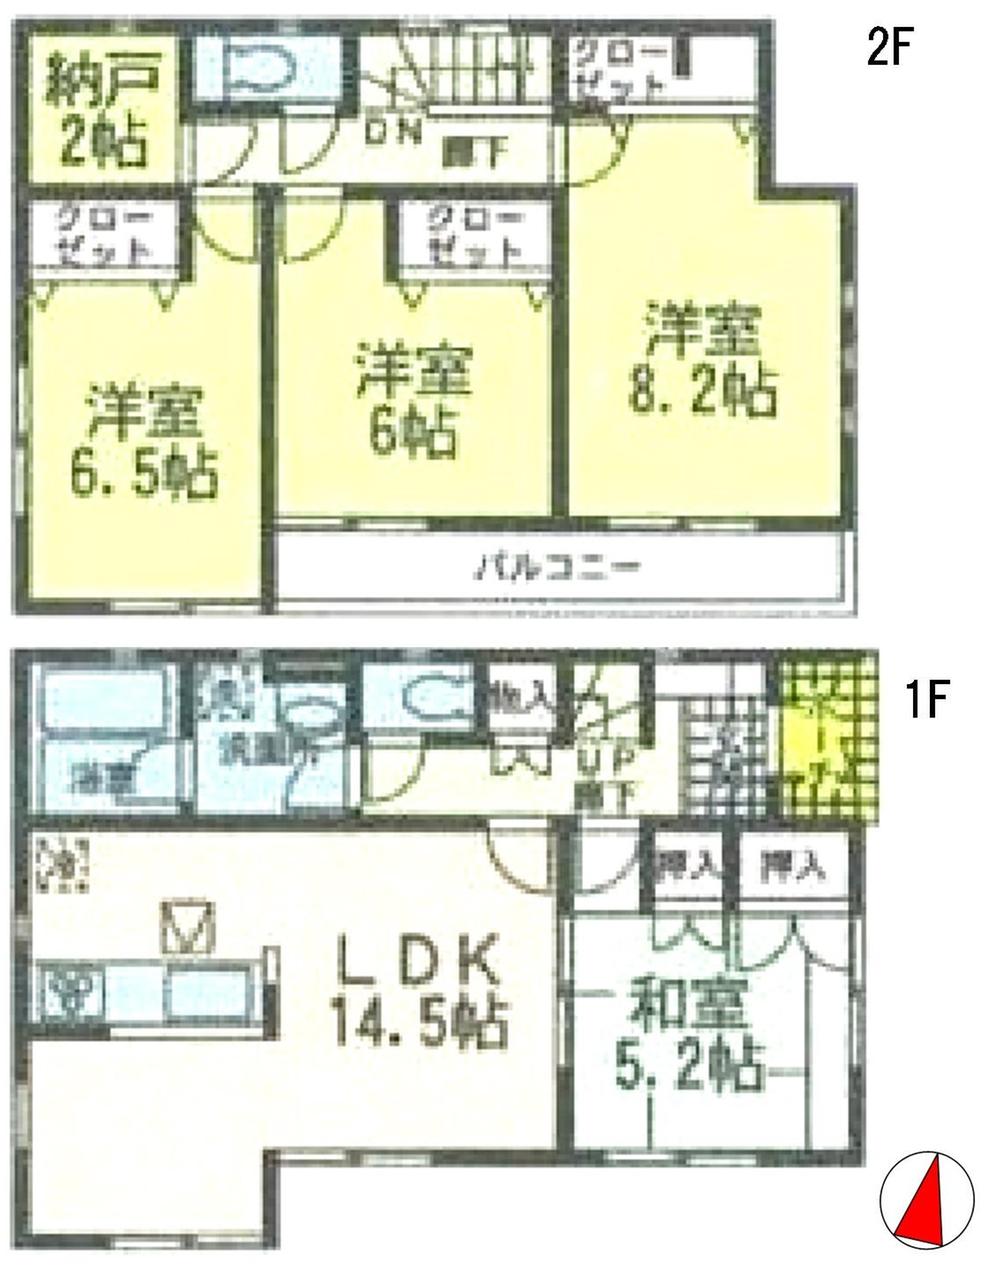 Floor plan. 21.9 million yen, 4LDK, Land area 164.37 sq m , Building area 98.82 sq m